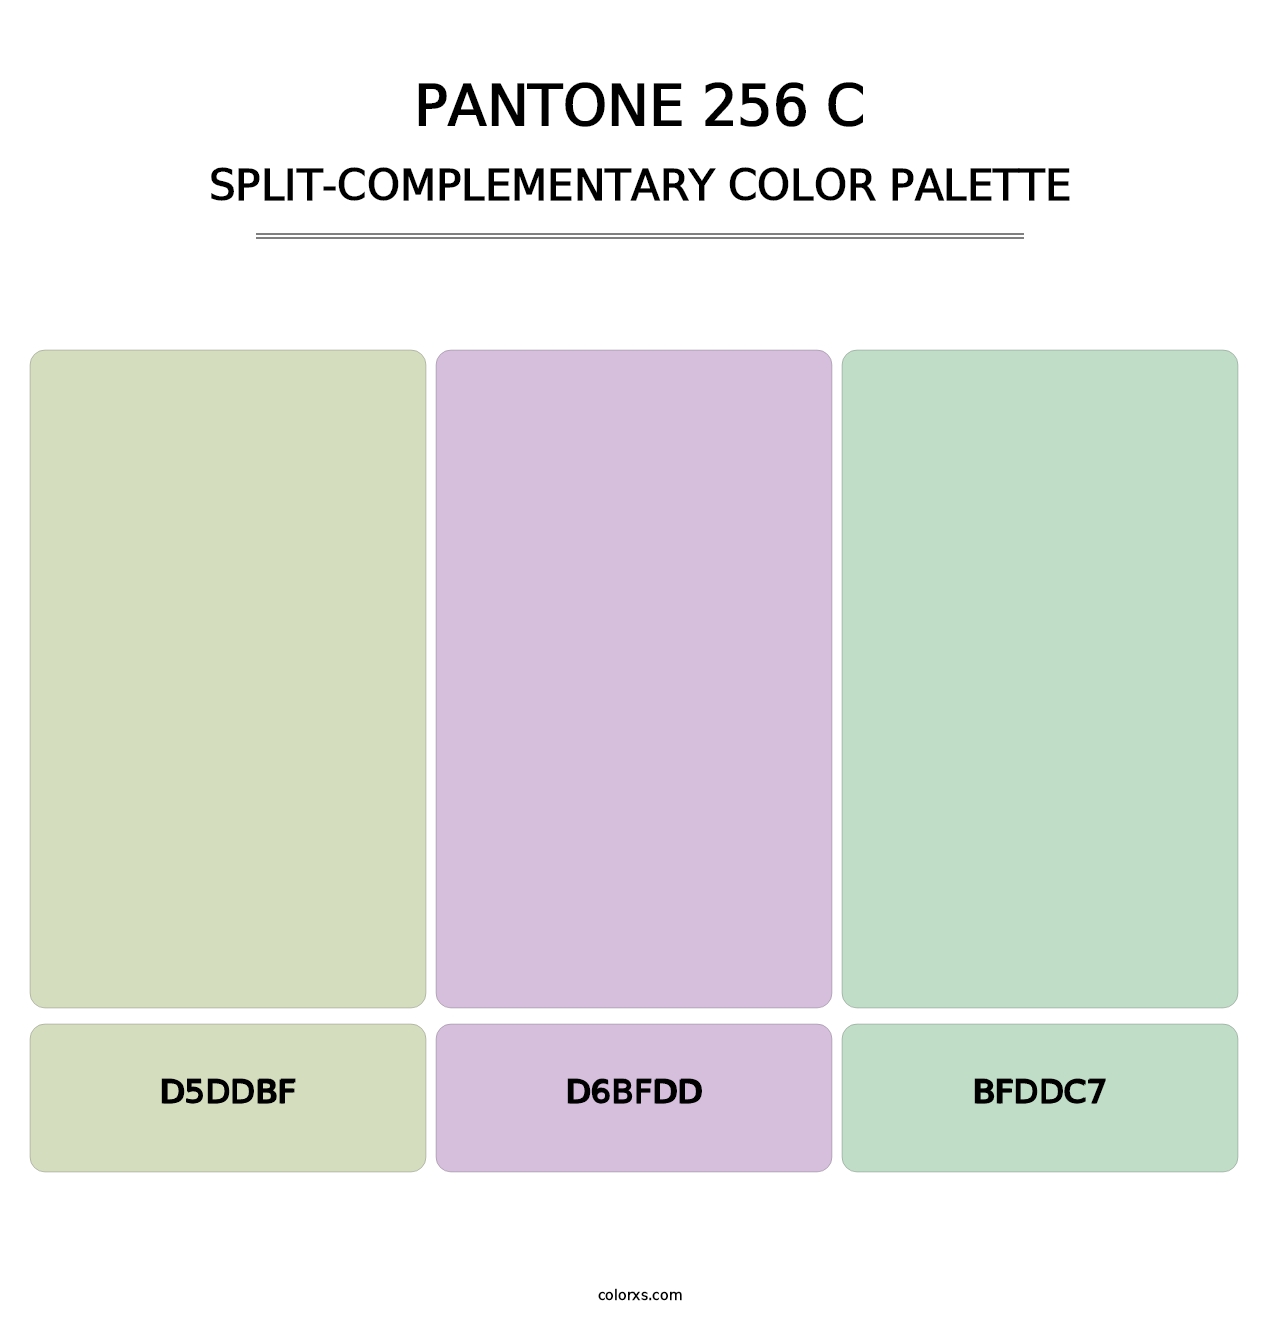 PANTONE 256 C - Split-Complementary Color Palette